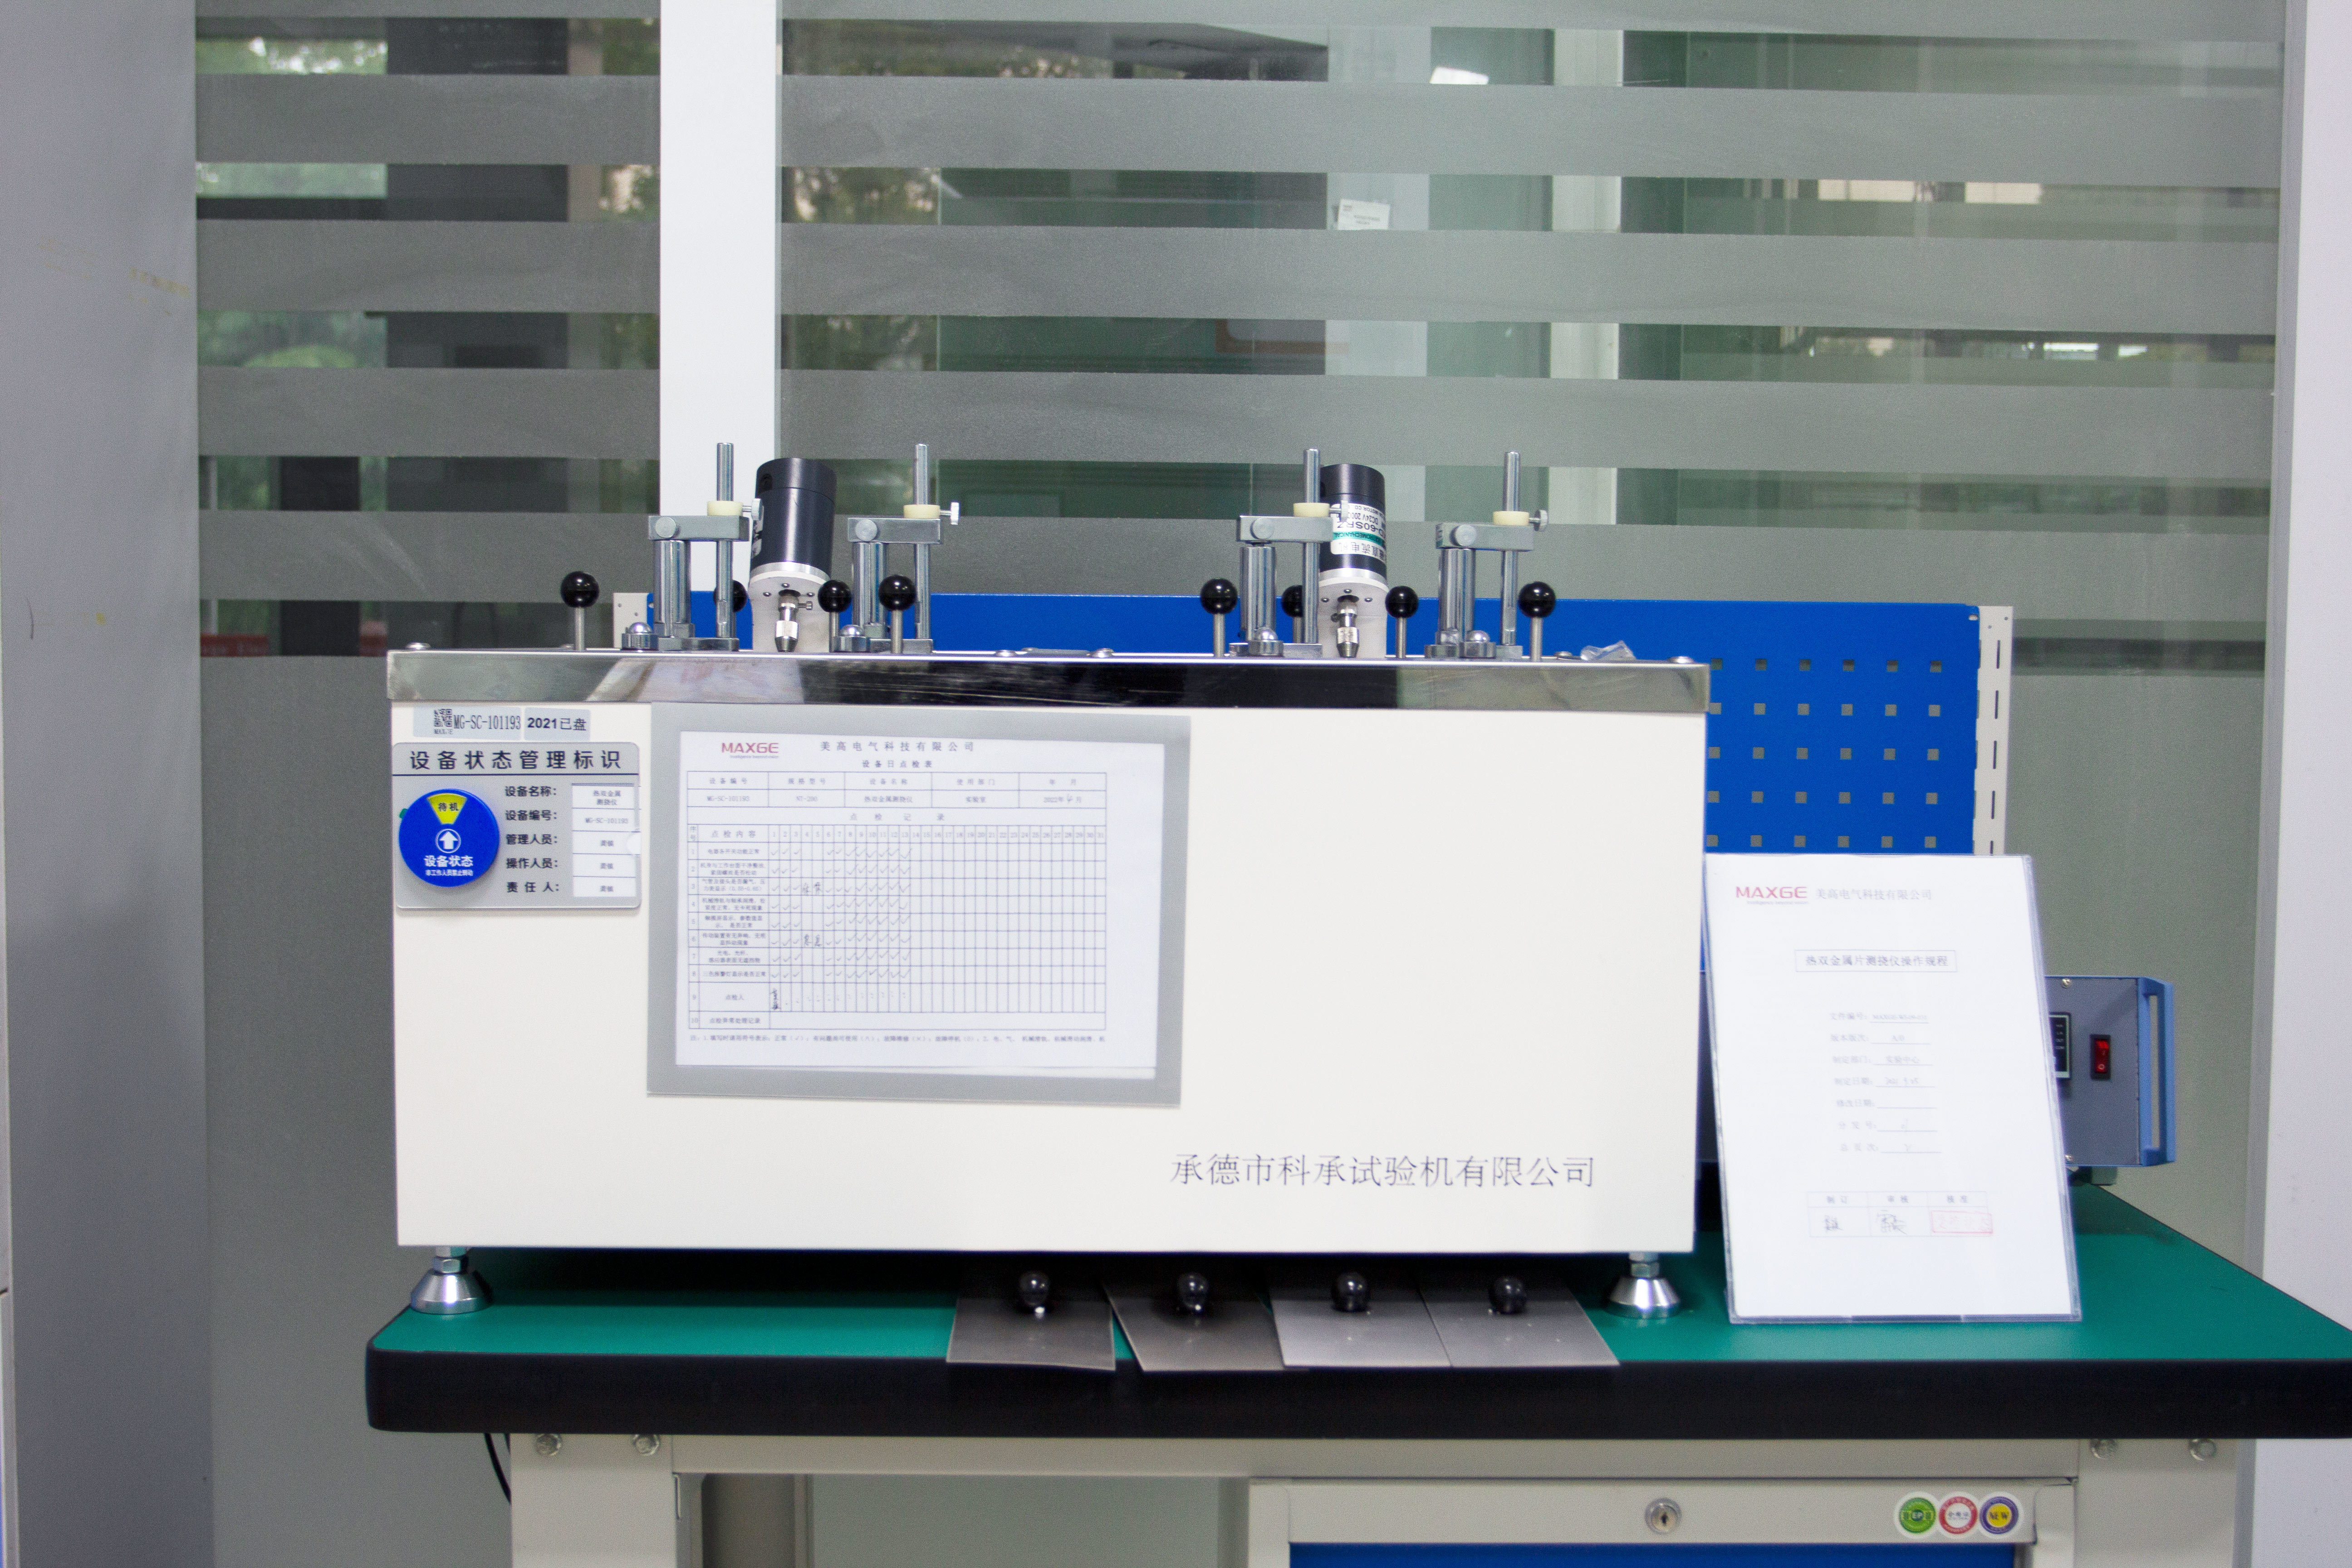 Operating Procedures for Thermal Bimetal Sheet Deflectometer